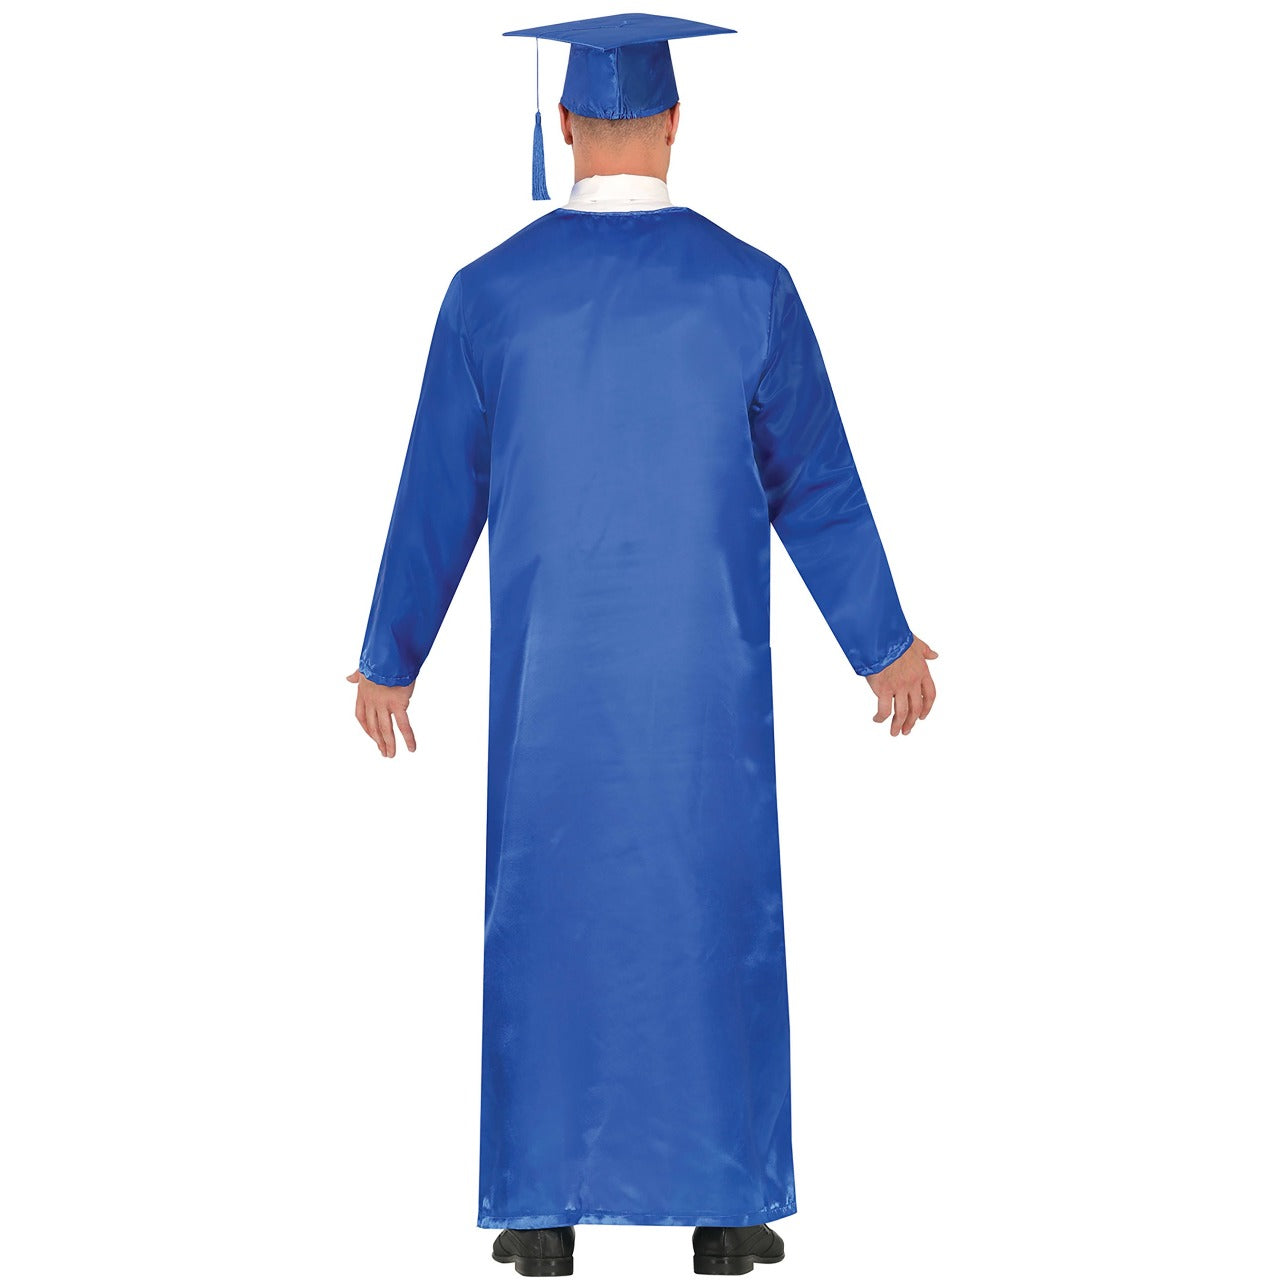 Acquista online costume da laureato blu per uomo e donna